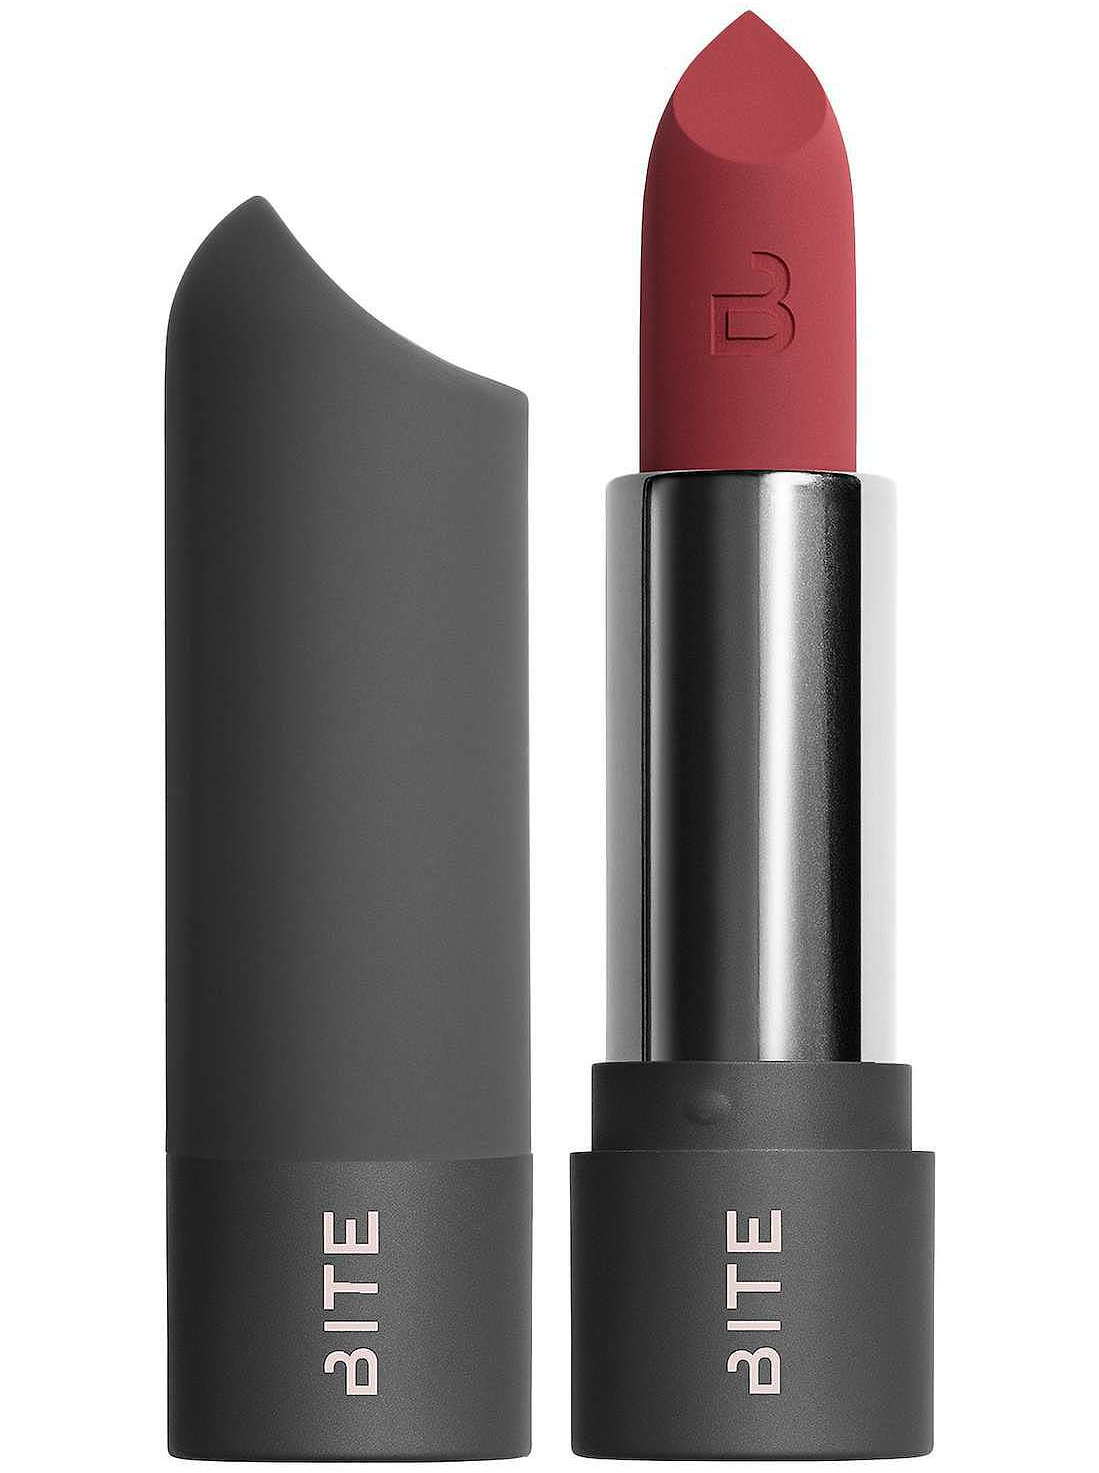 best-red-lipstick